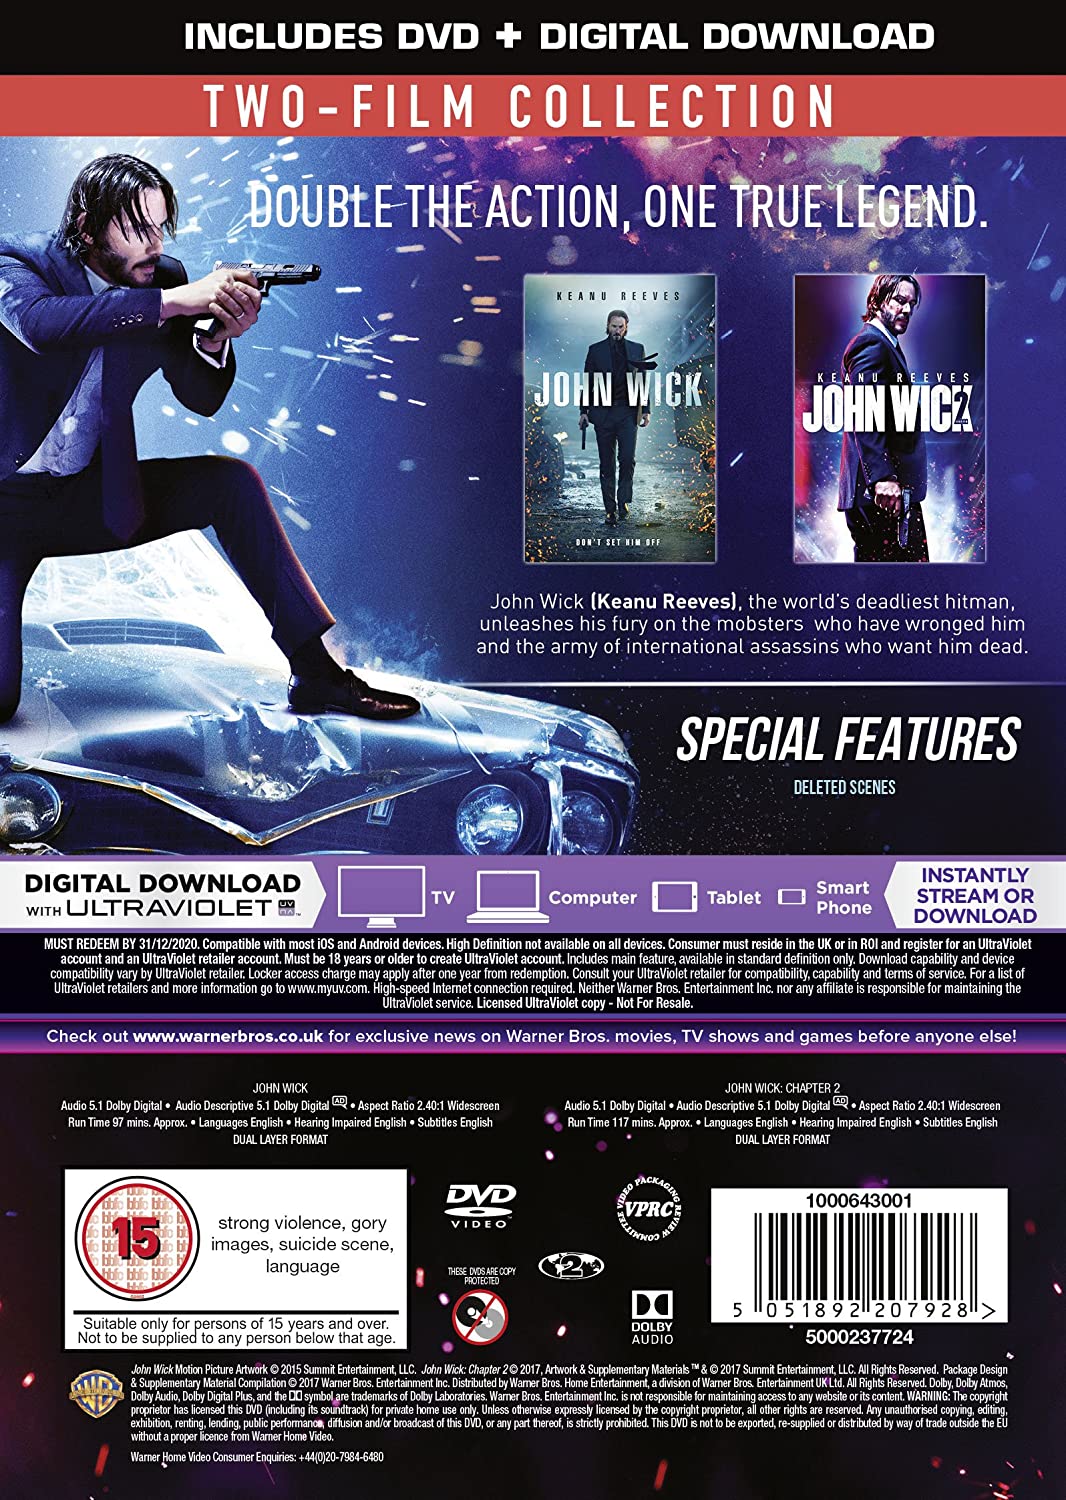 John Wick : Chapitres 1 et 2 [DVD + Téléchargement numérique] [2017]